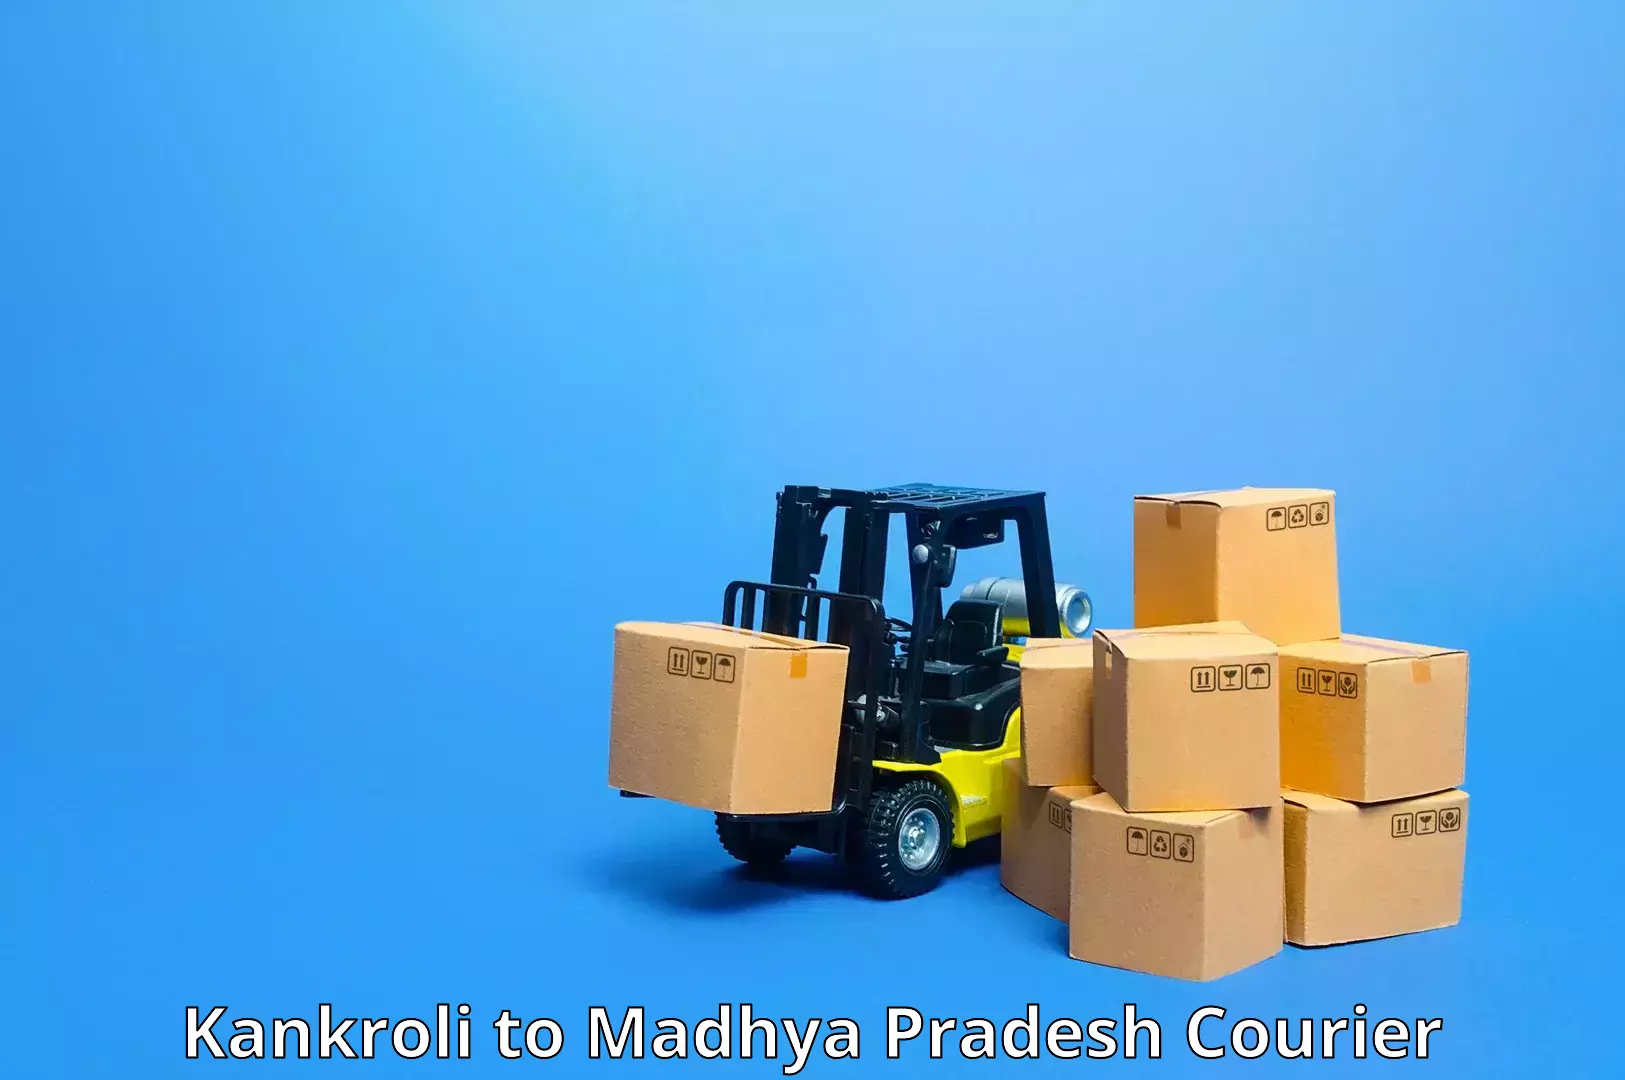 Dynamic courier operations Kankroli to Maheshwar